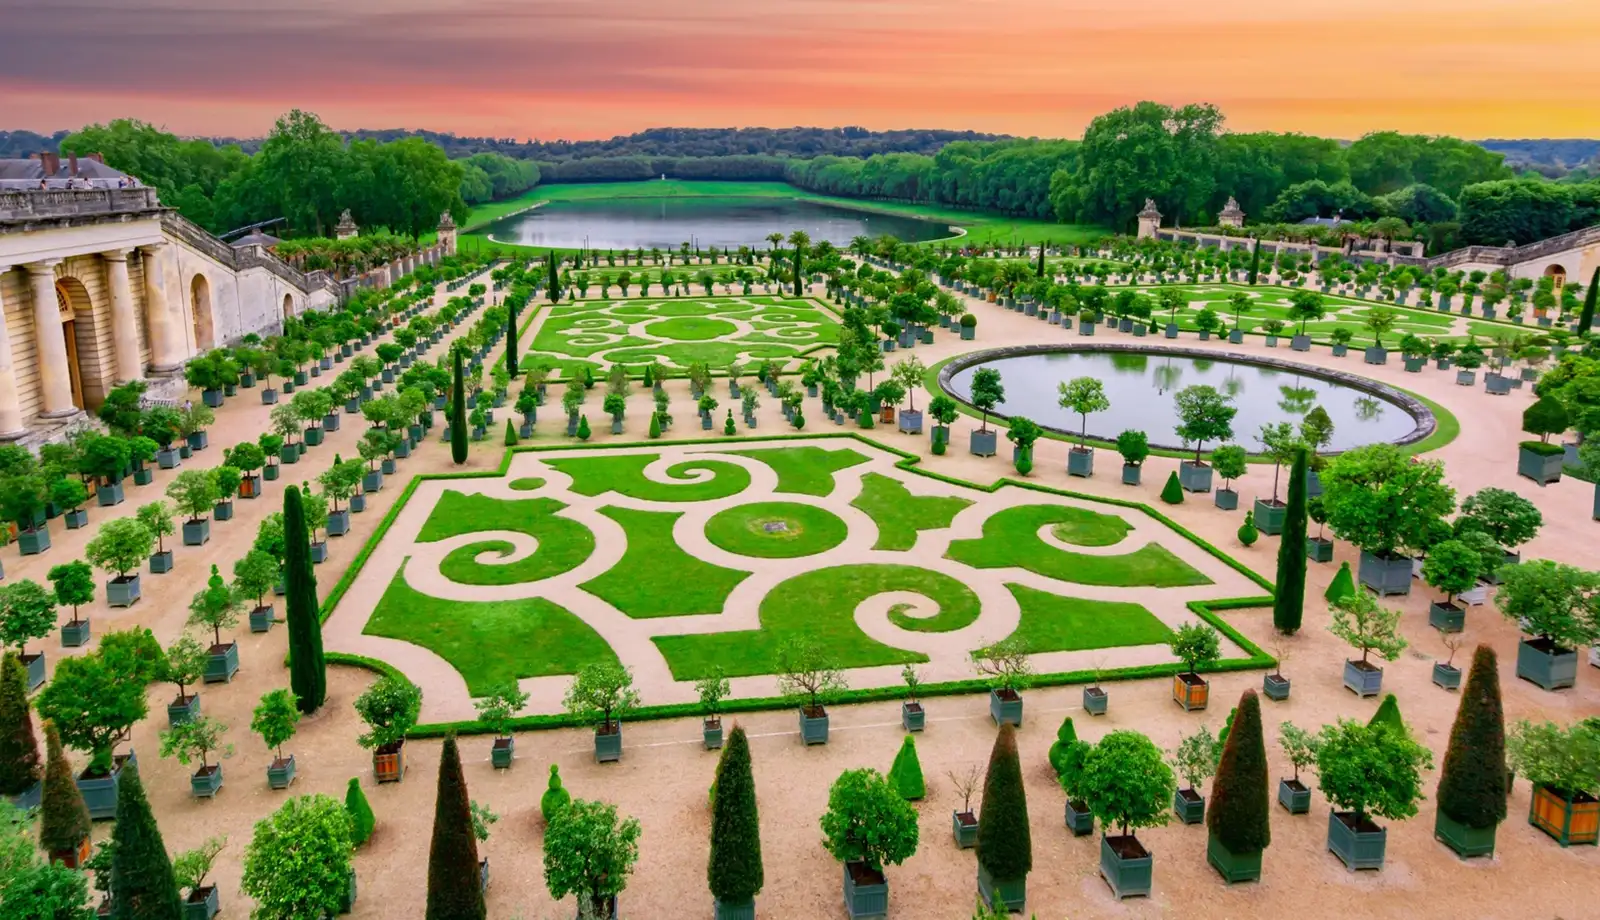 Một góc ảnh khu vườn Versailles rộng lớn